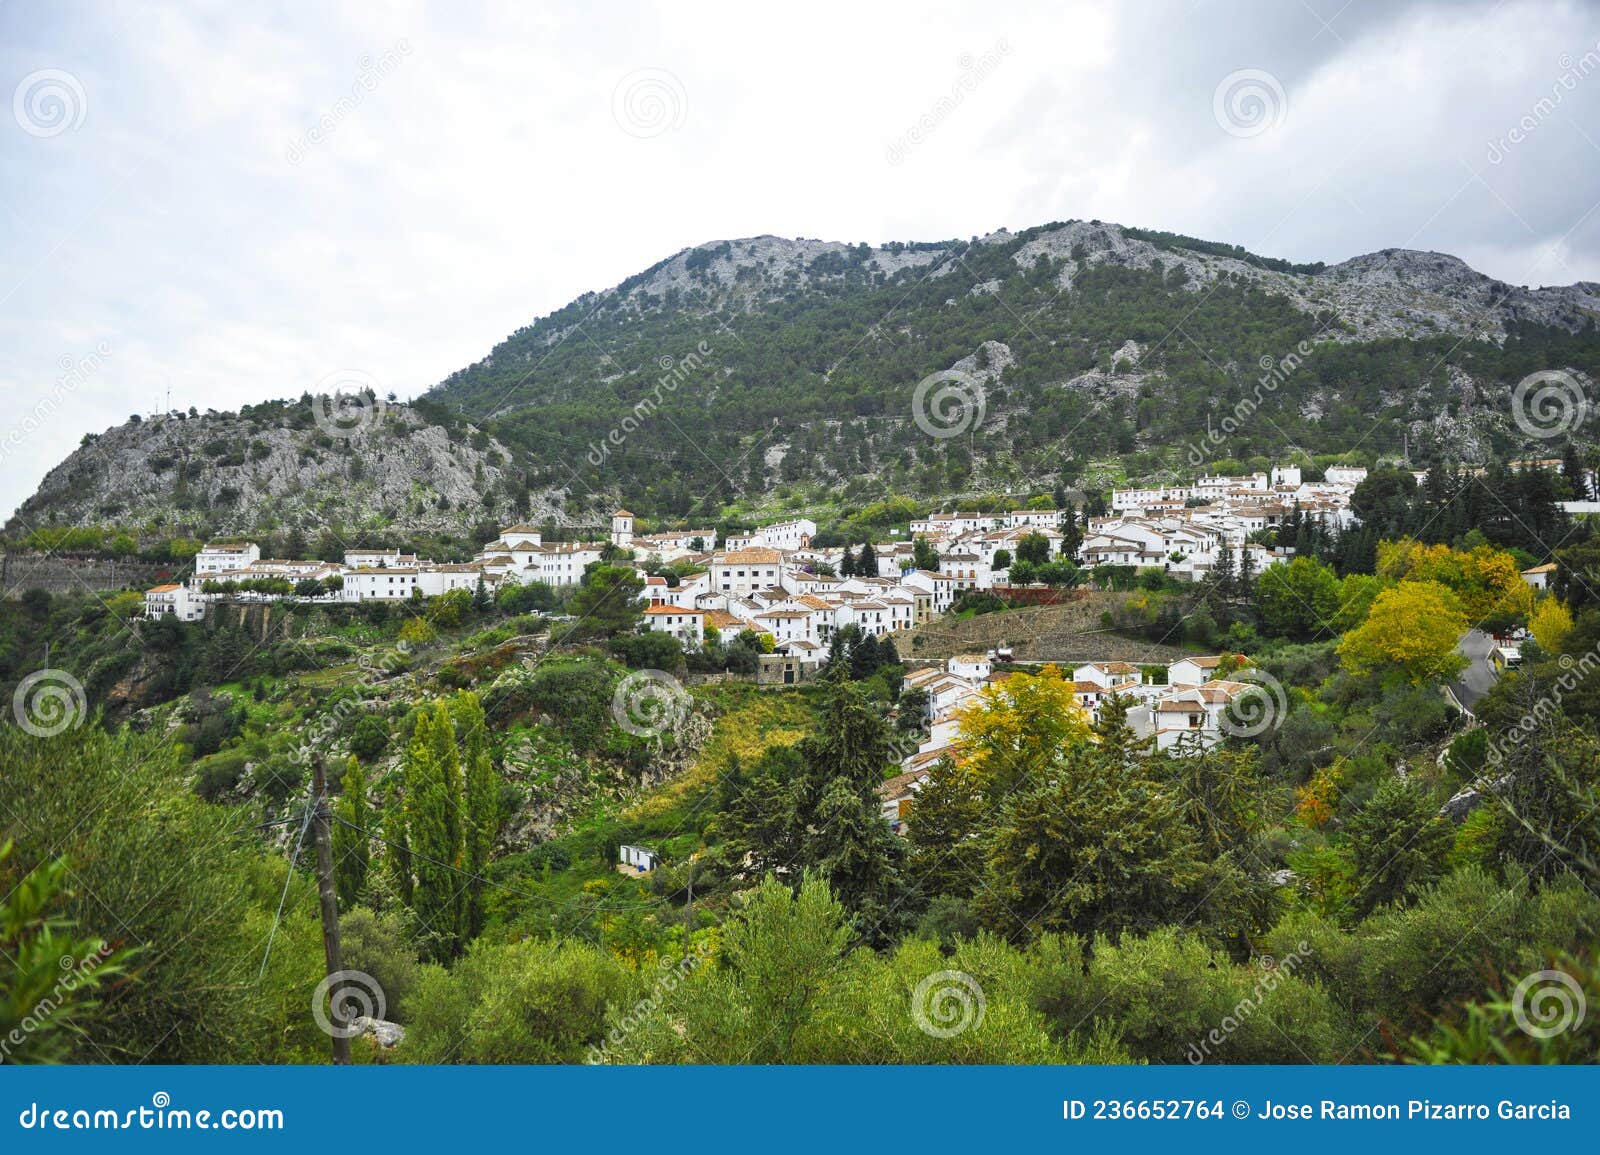 grazalema pueblo blanco de la sierra de cadiz entre montaÃÂ±as. andalucÃÂ­a espaÃÂ±a